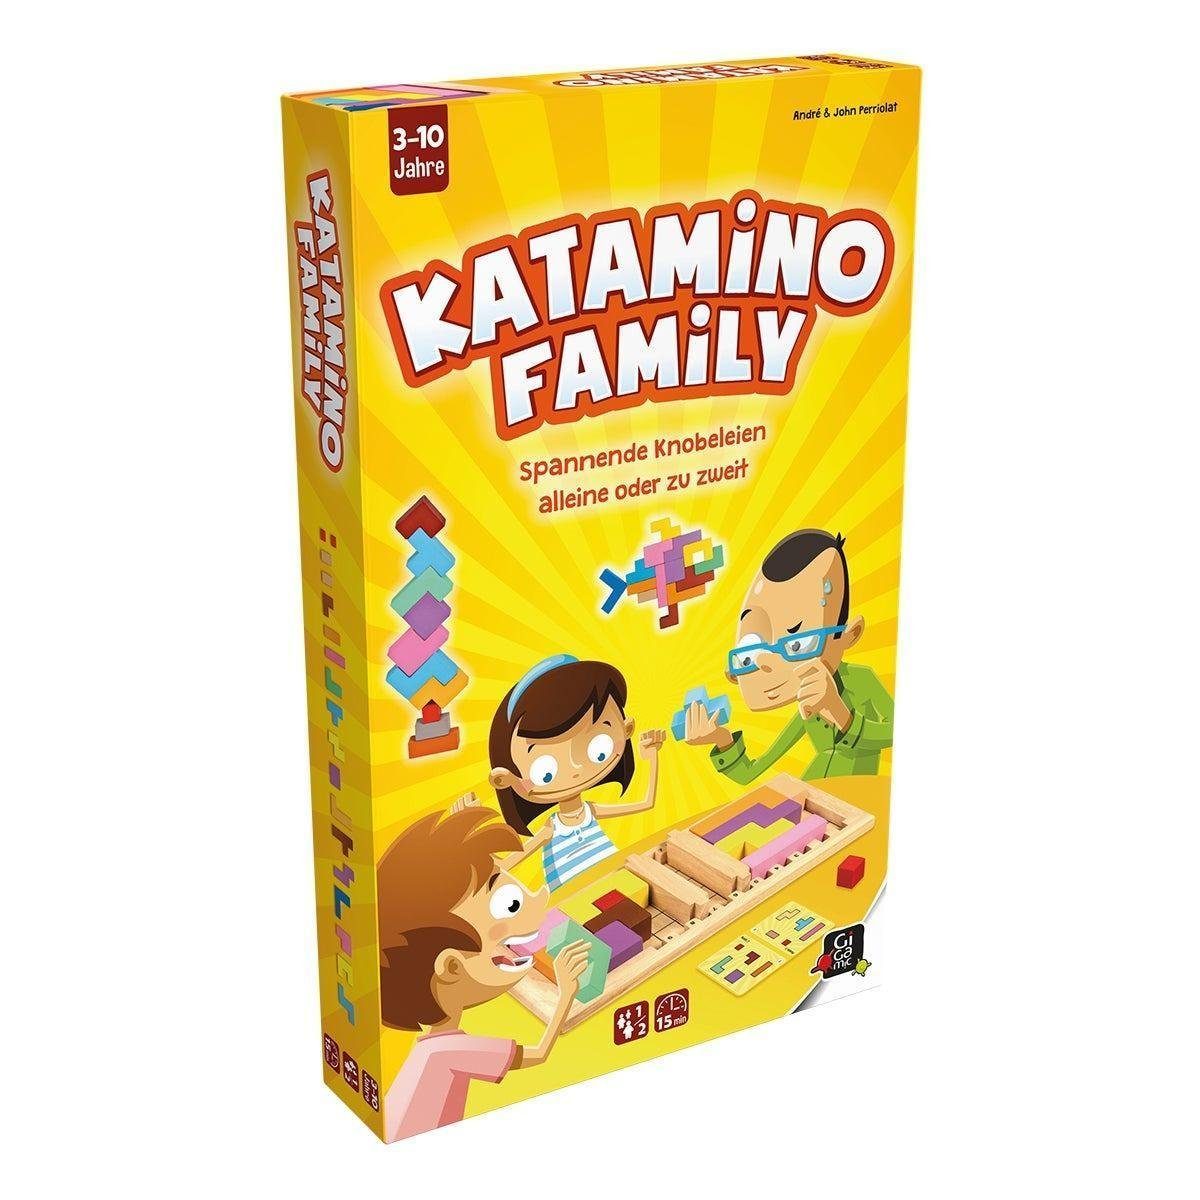 Gigamic Spiel, Familienspiel Katamino Family, Knobelspiel, für 1-2 Spieler,  ab 3...